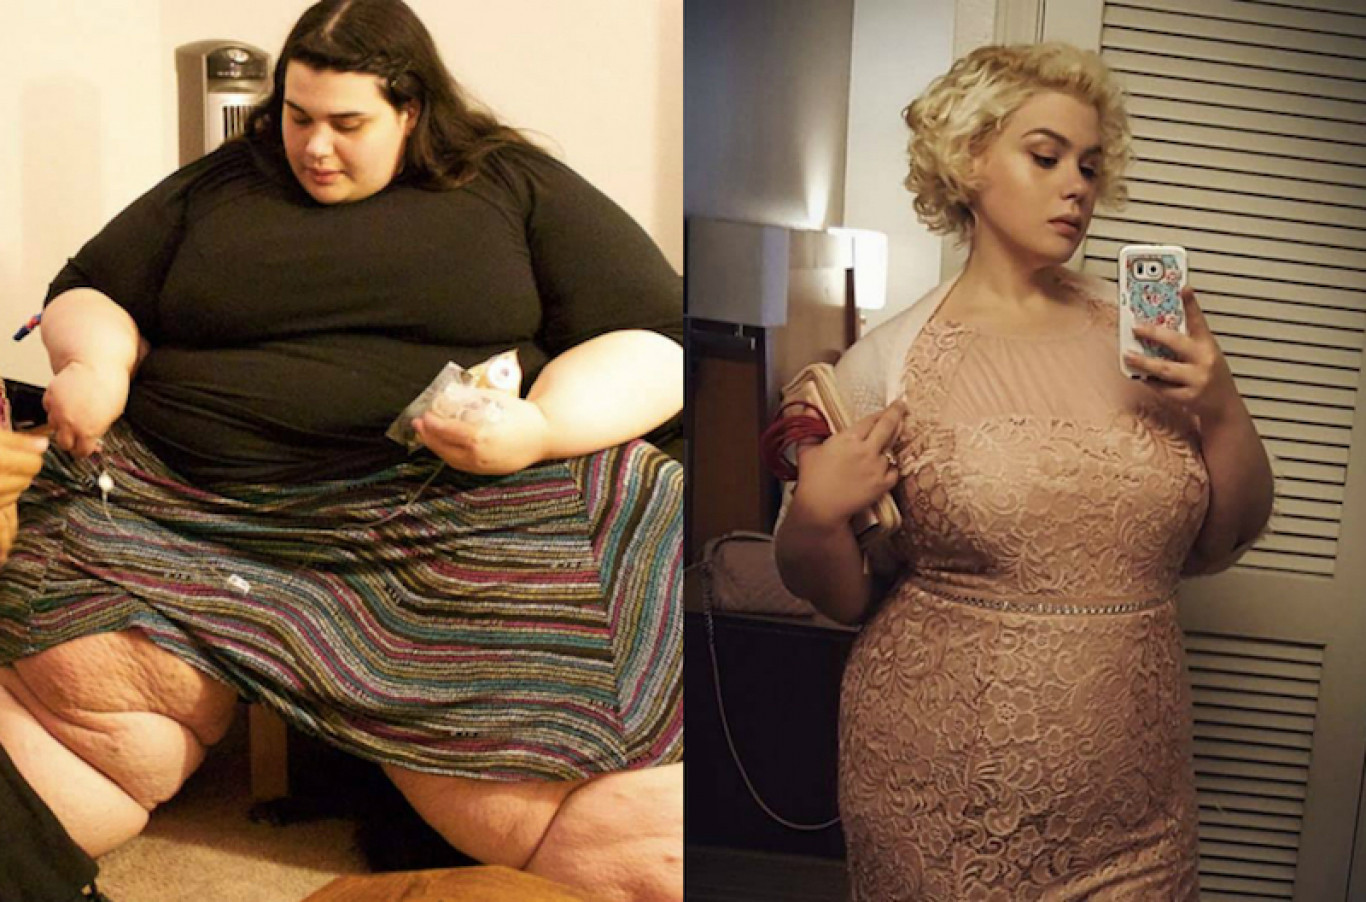 20 kg súlycsökkenés előtte és utána)